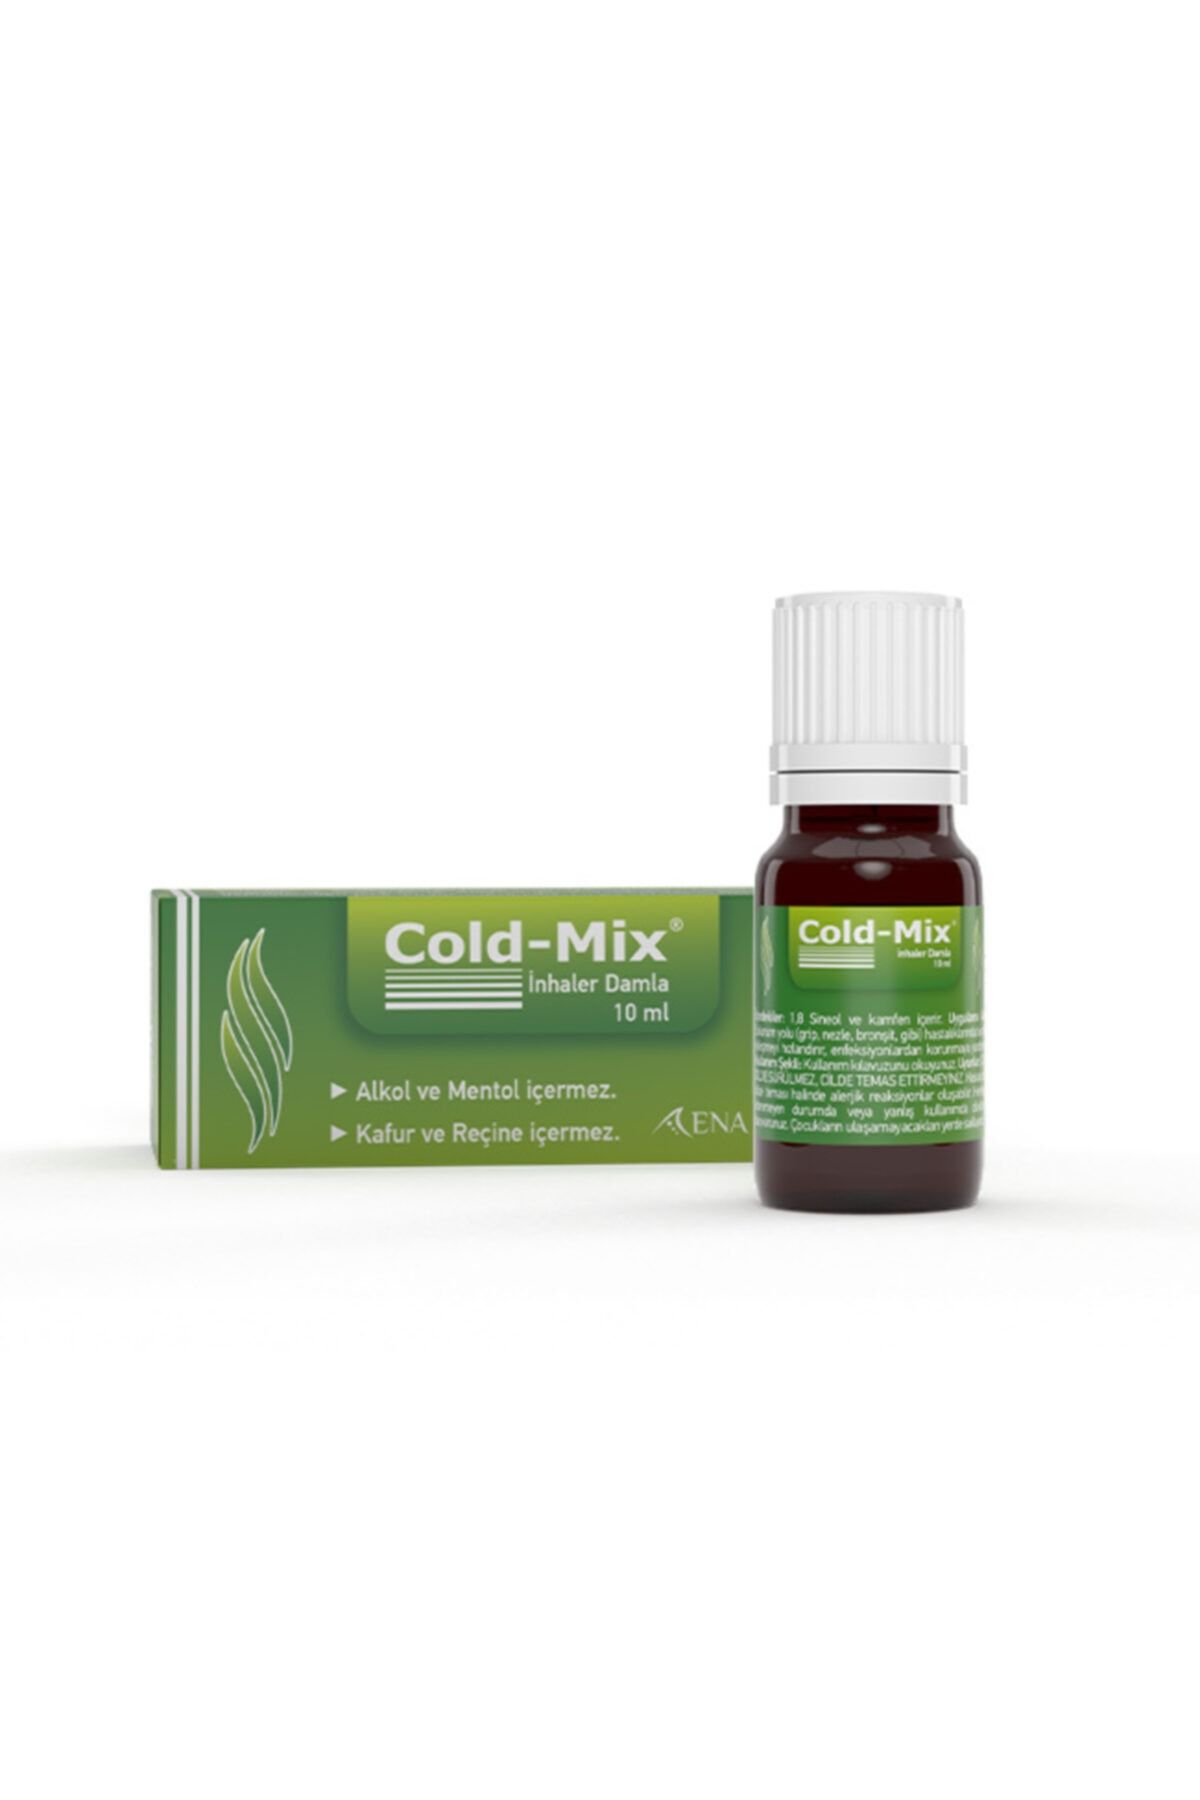 Cold-Mix Inhaler Okaliptüs Ve Ladin Yağları Içeren Inhaler Damla 10ml